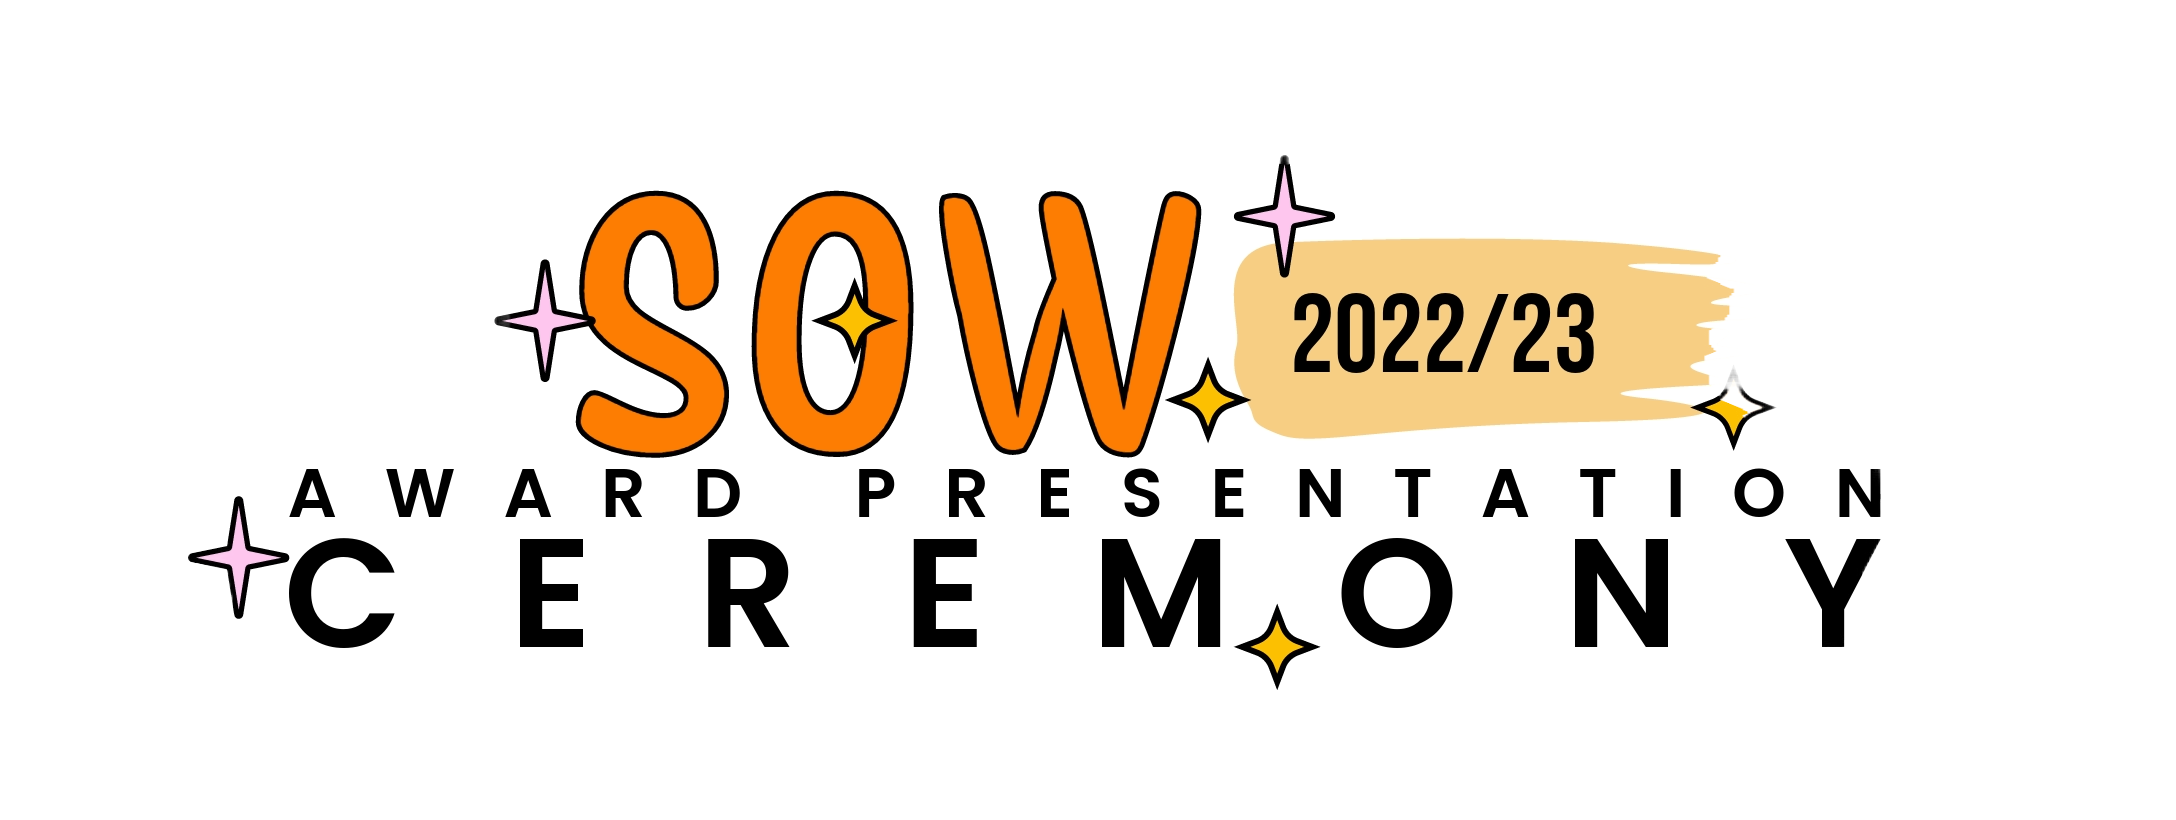 SOW Award Presentation Ceremony 2022/23